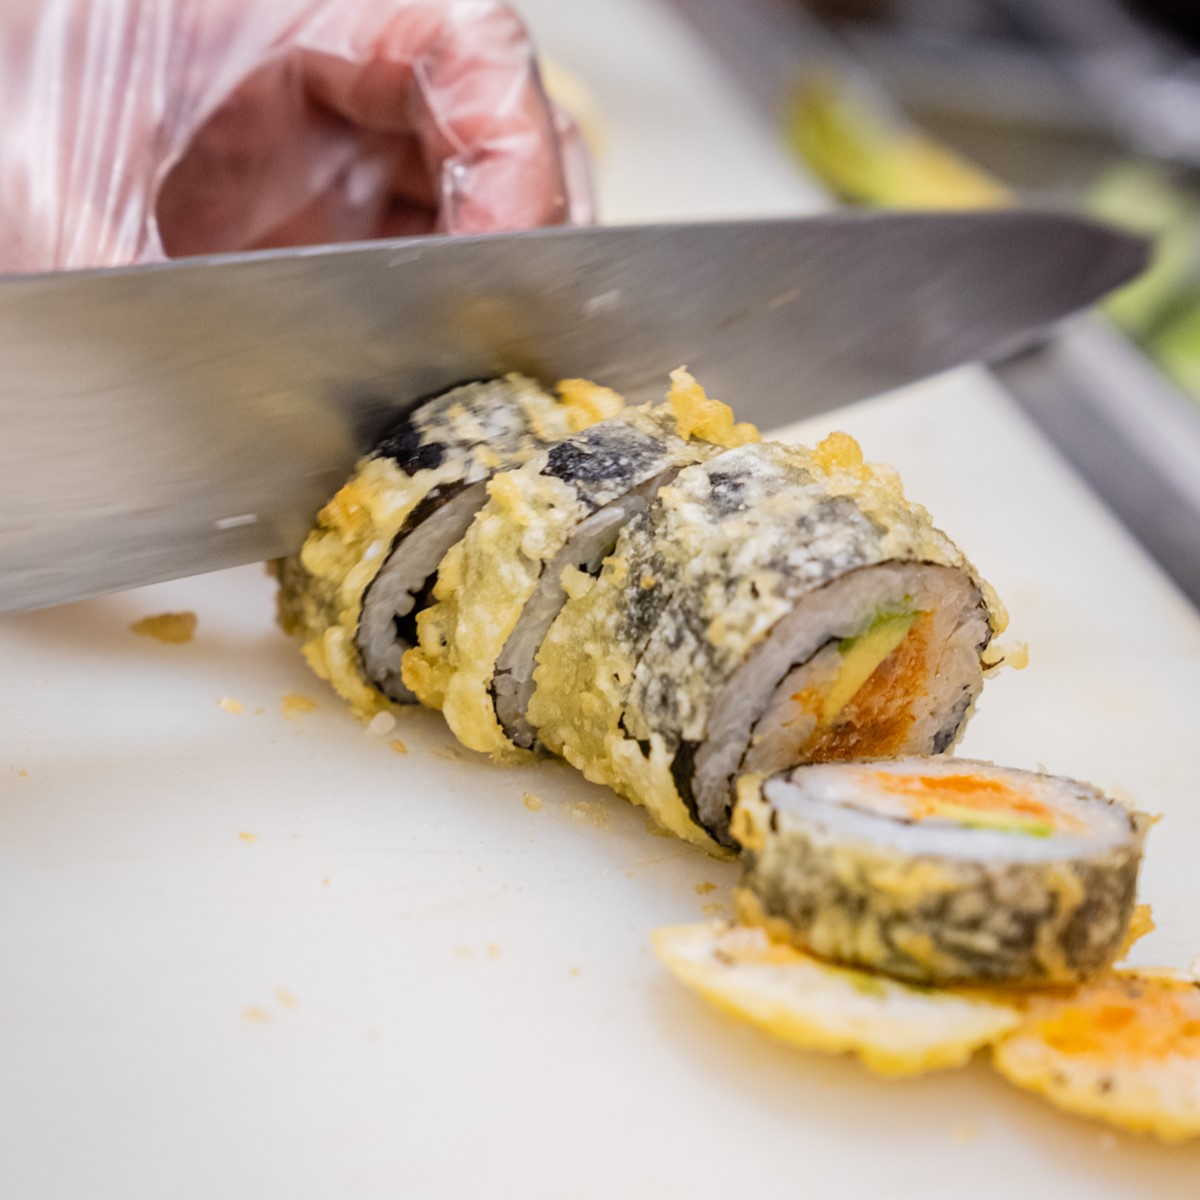 Sushi being cut